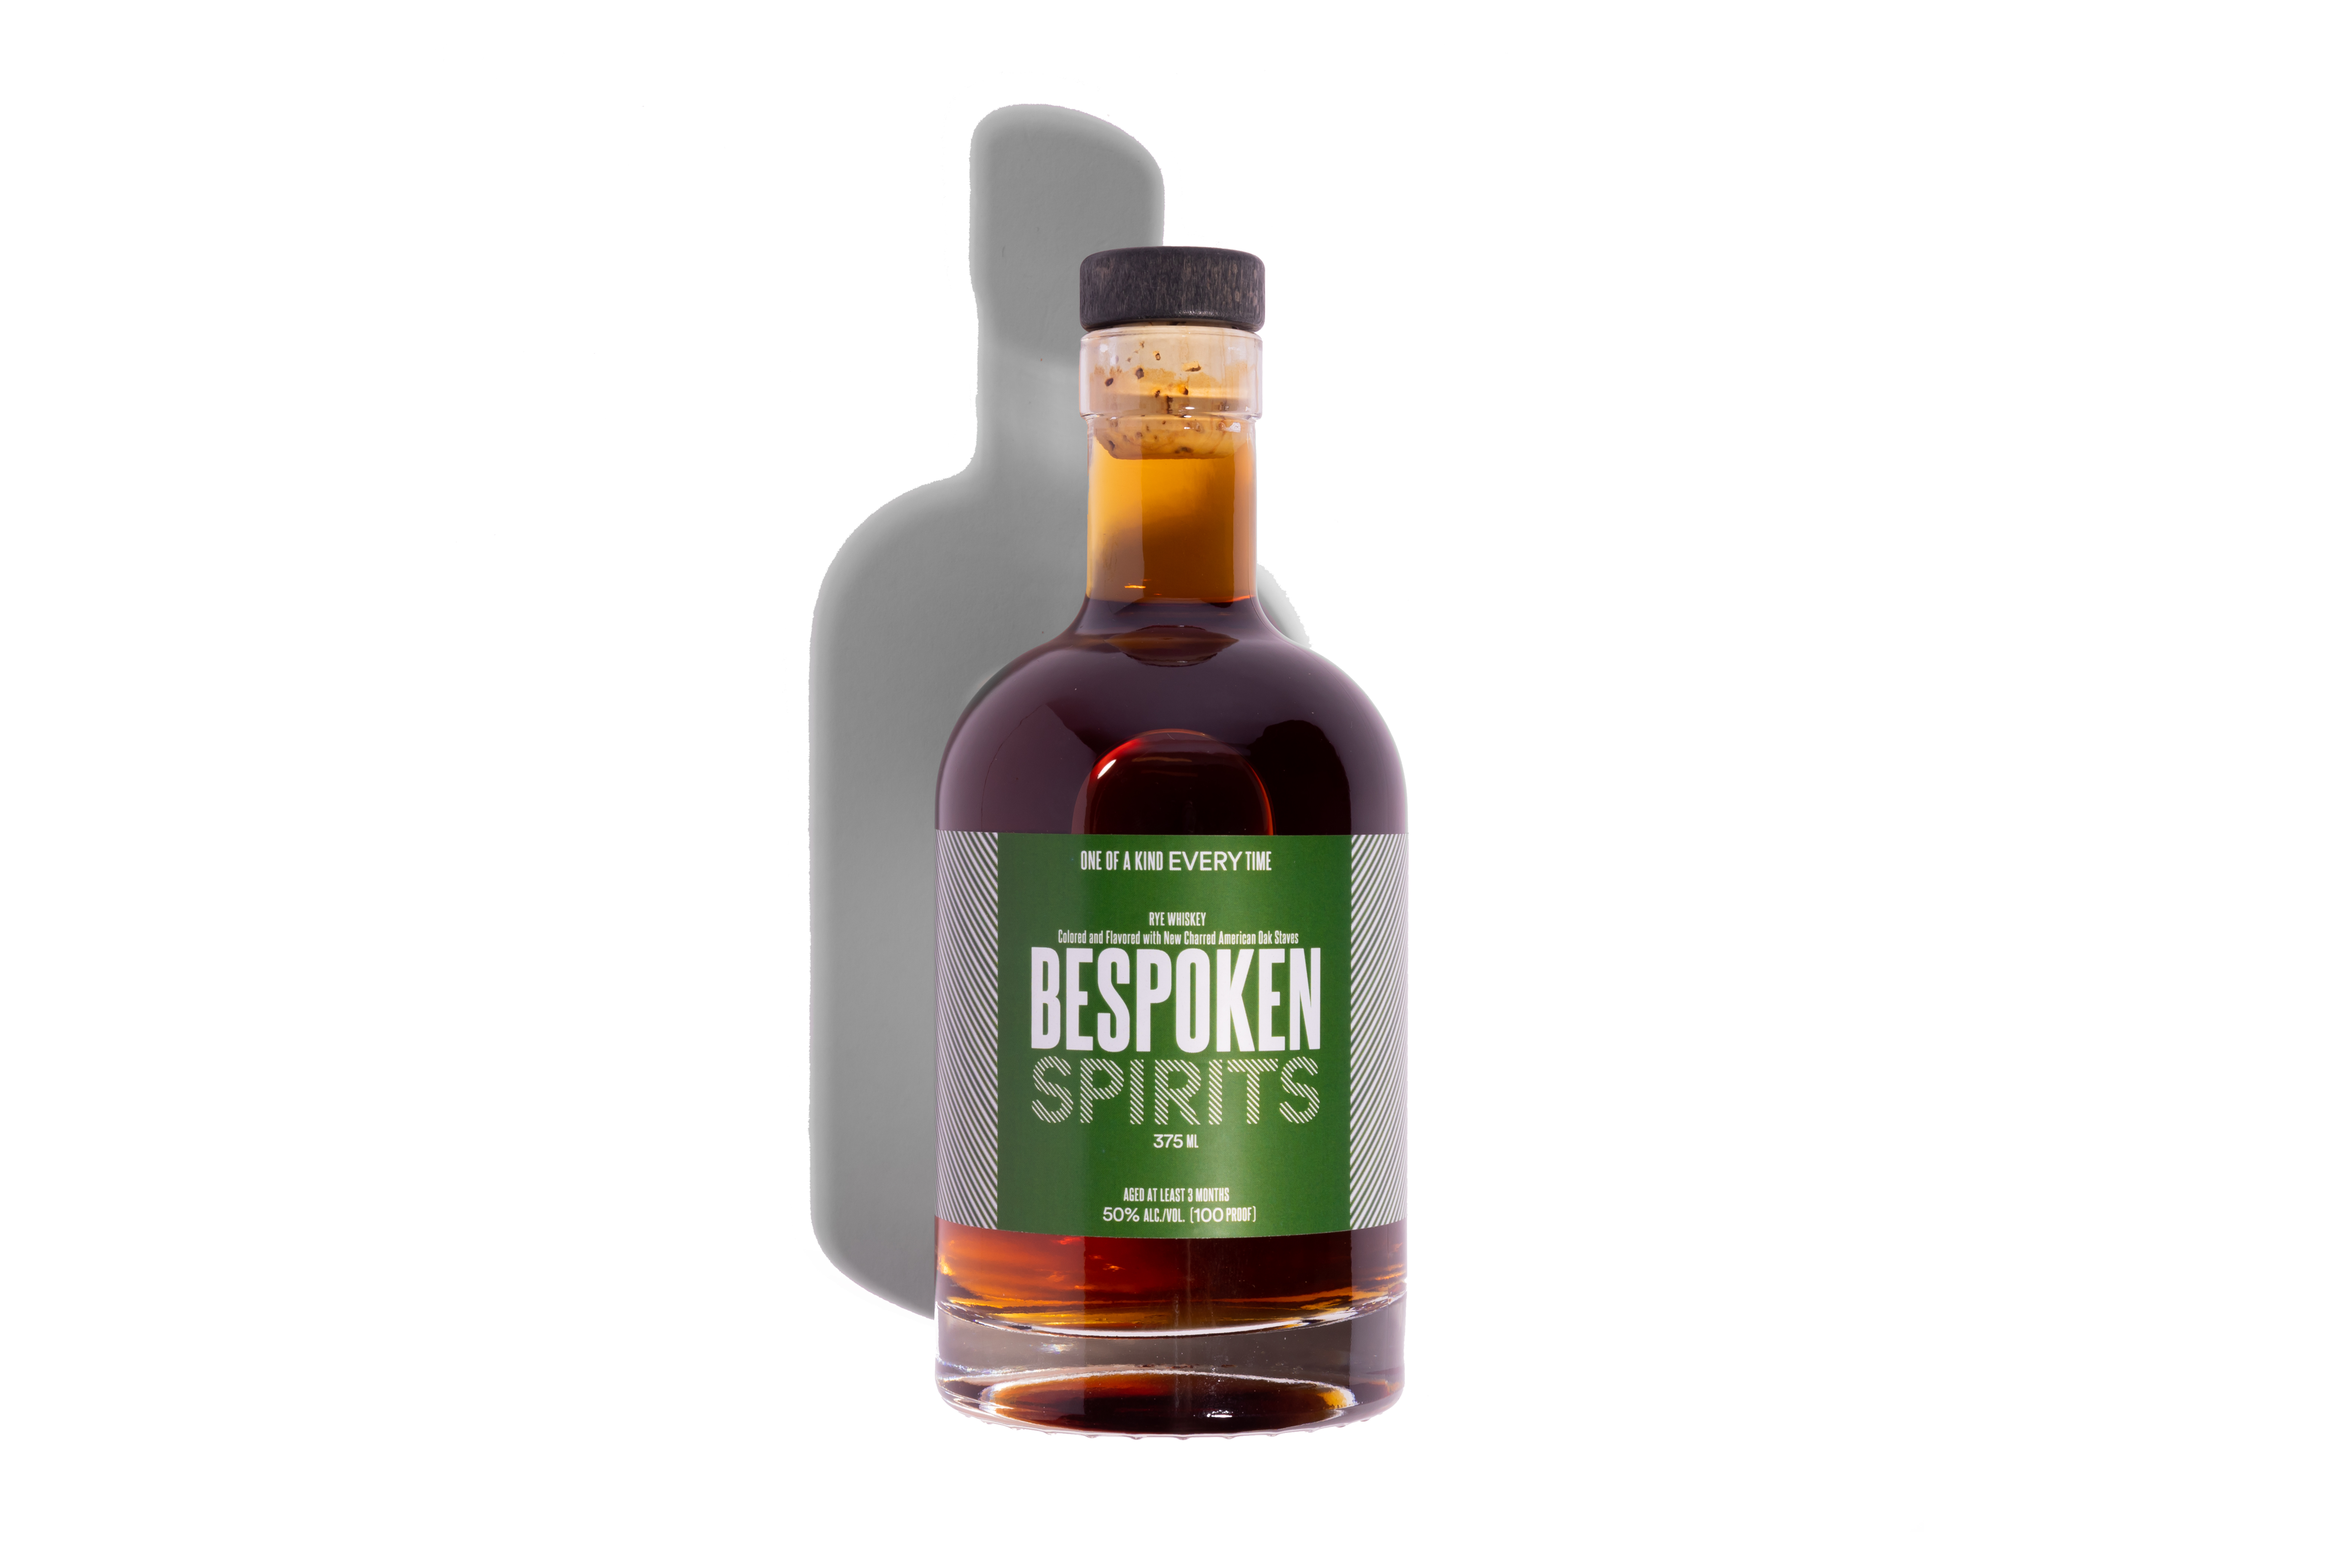 Rye whiskey made by Bespoken Spirits